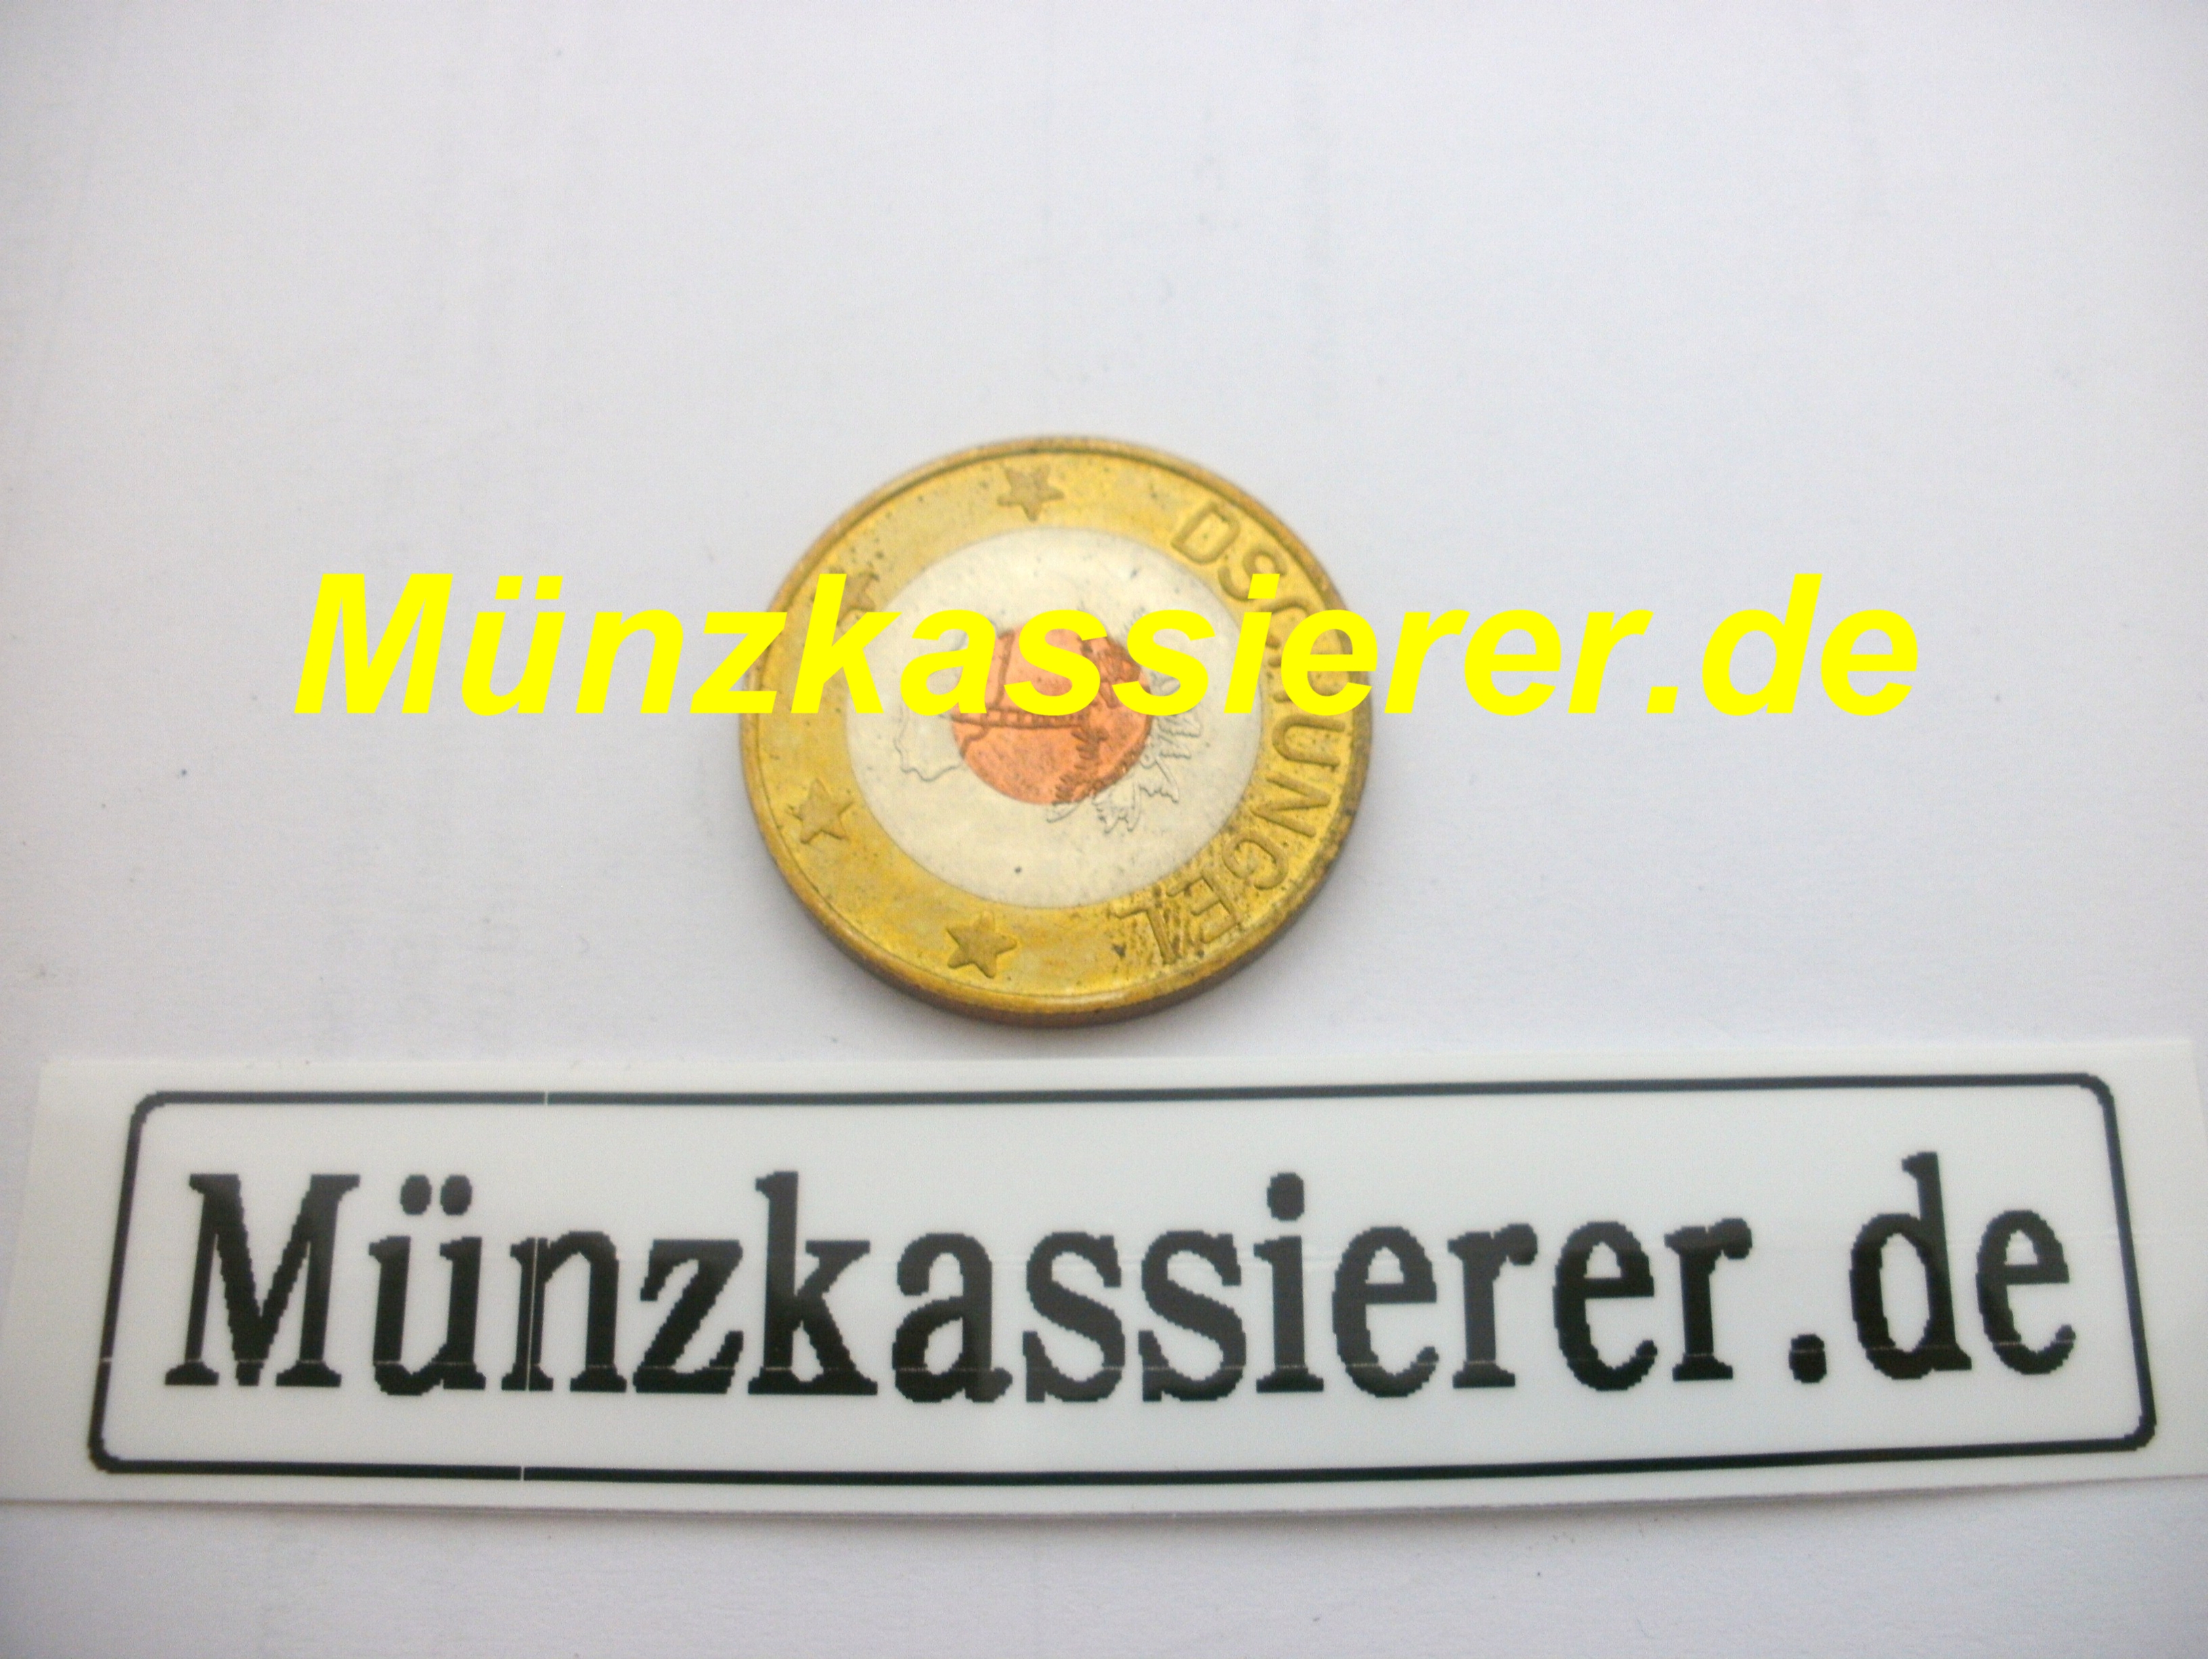 Münzkassierer.de Münzen Wertmarken Ø 26,8 x 2,2 mm. Münzkassierer